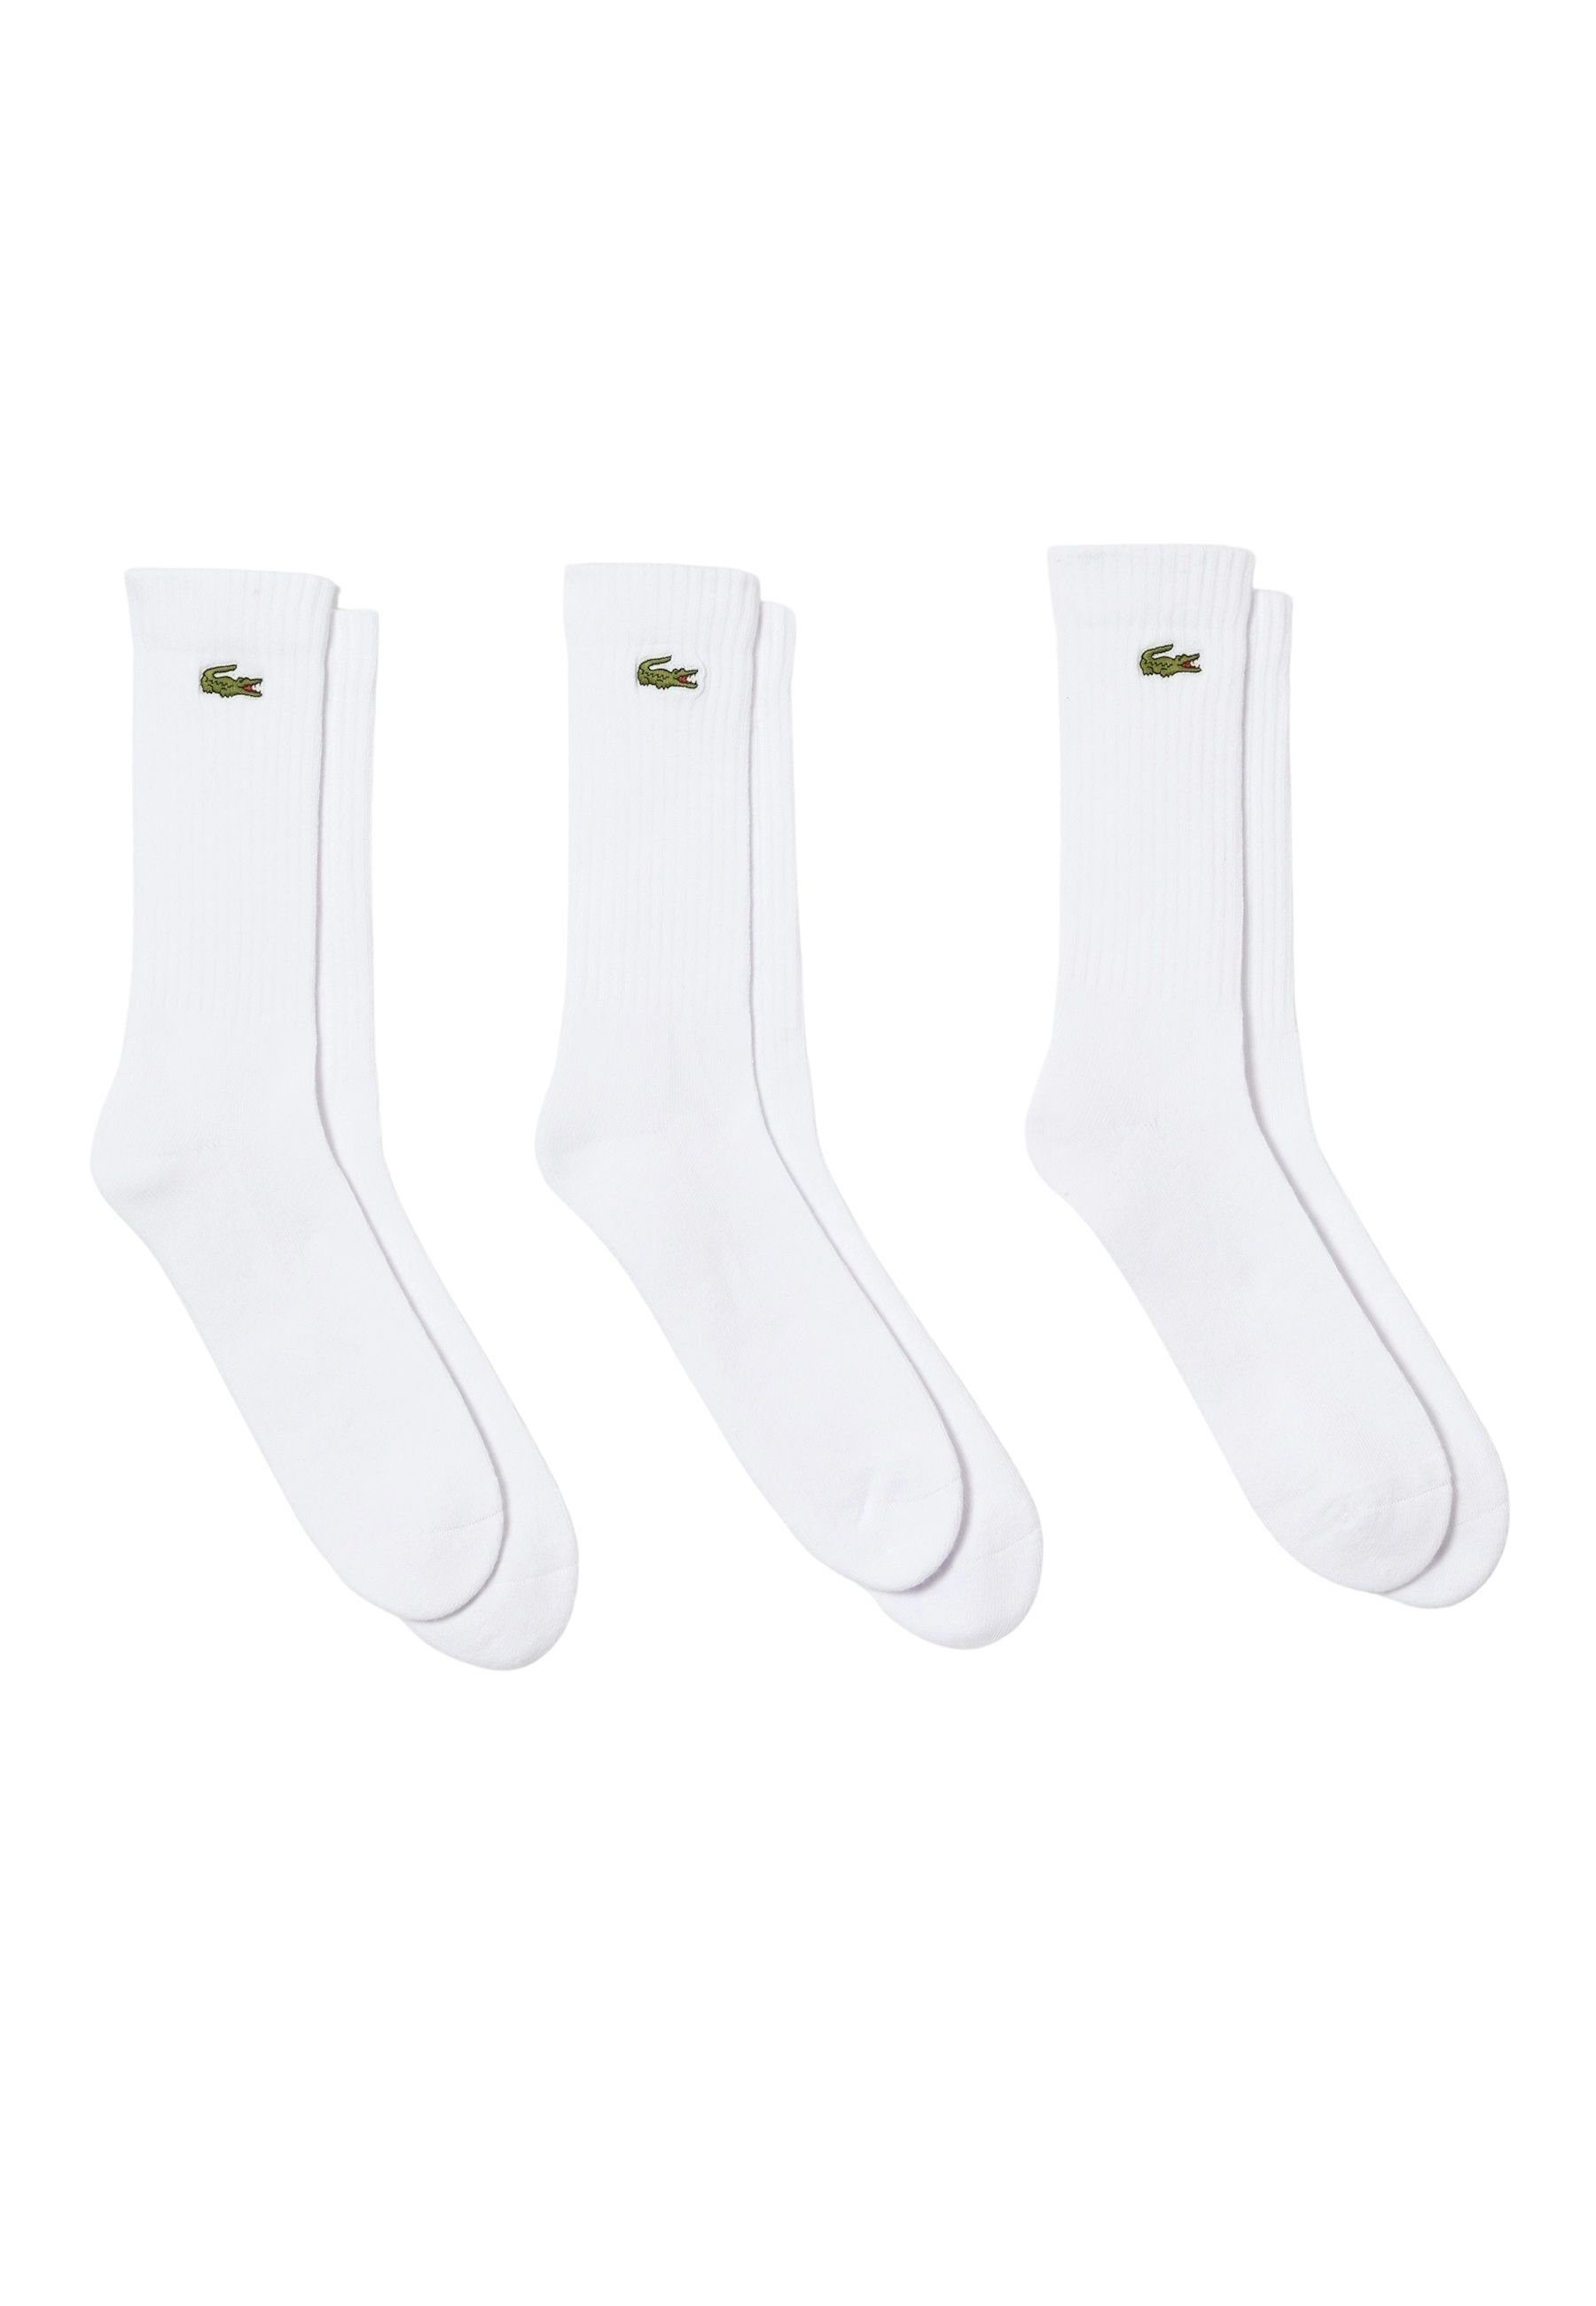 Lacoste Socken Socken Permanent Offer hohe Socken Dreierpack (3-Paar) weiß